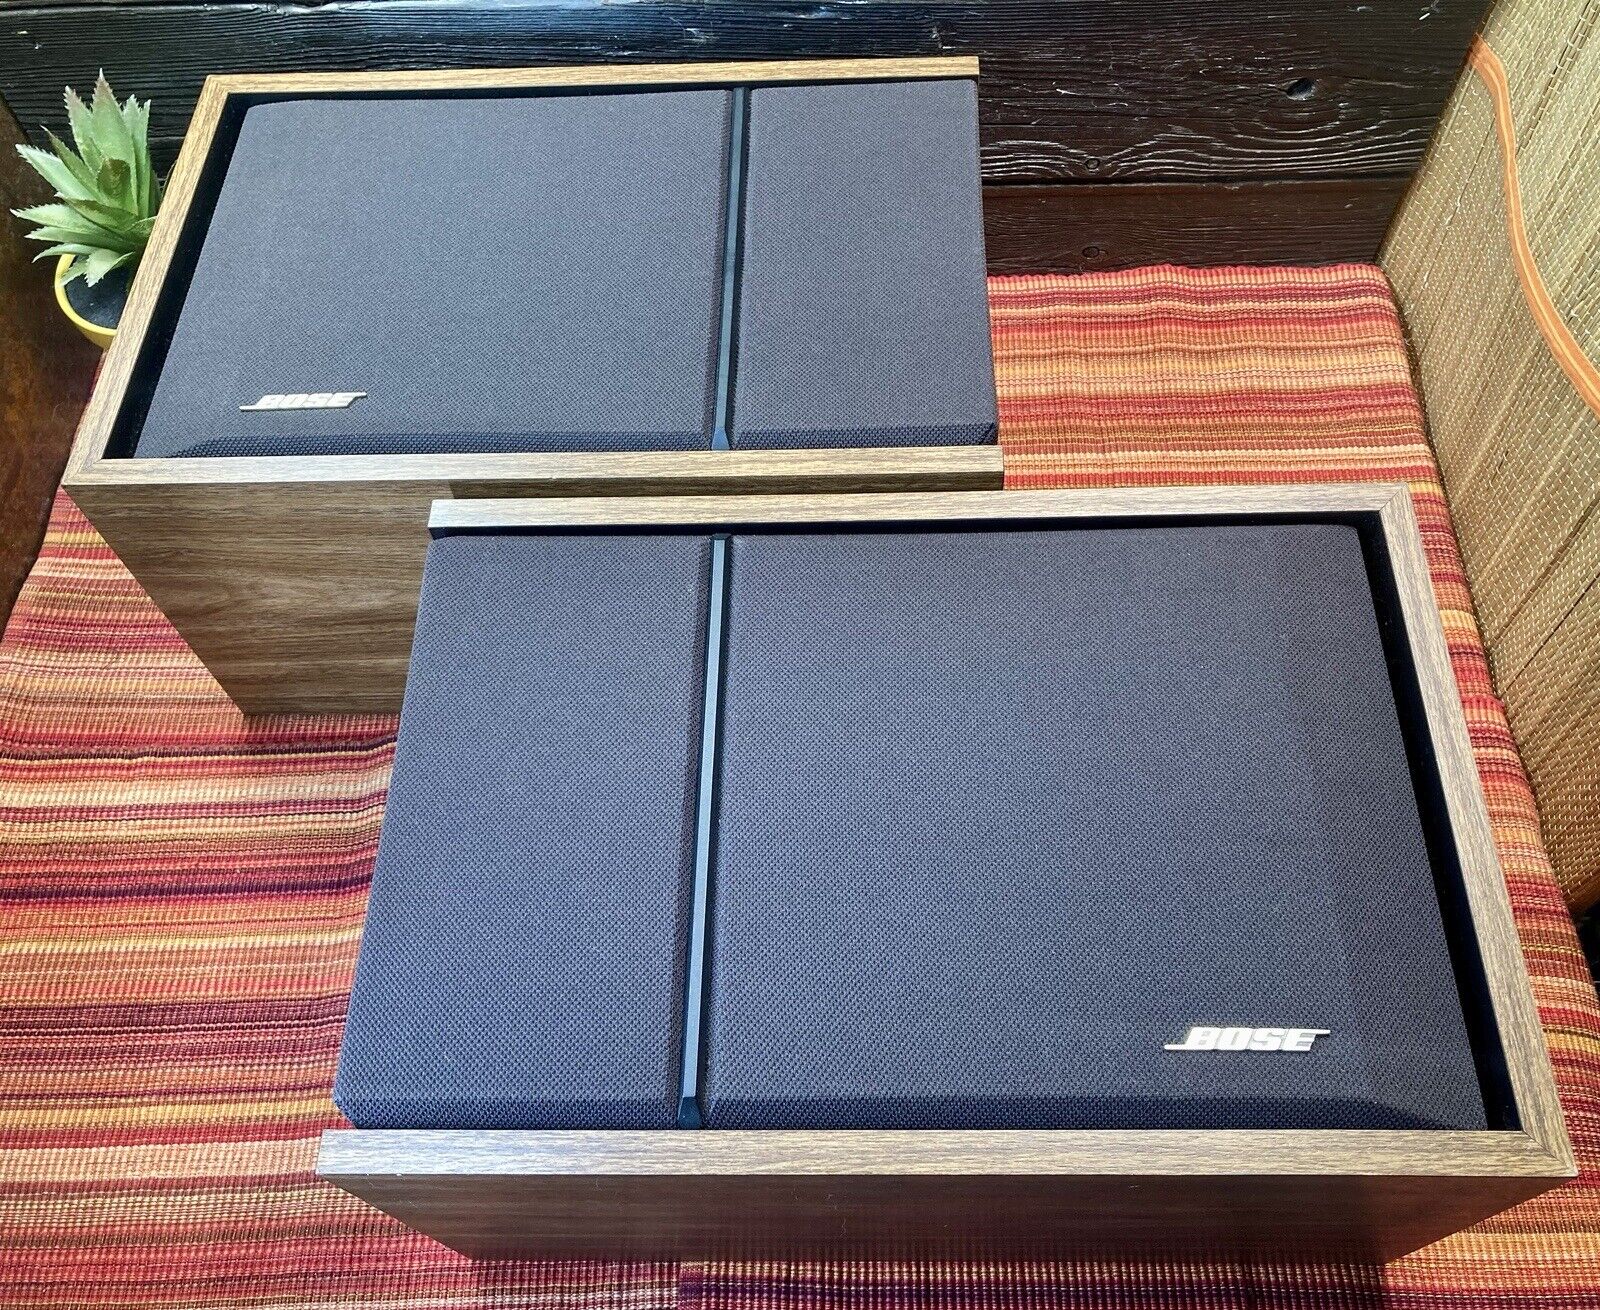 Pair Bose 201 Series III Direct Reflecting Bookshelf Speakers Wood Grain Vintage